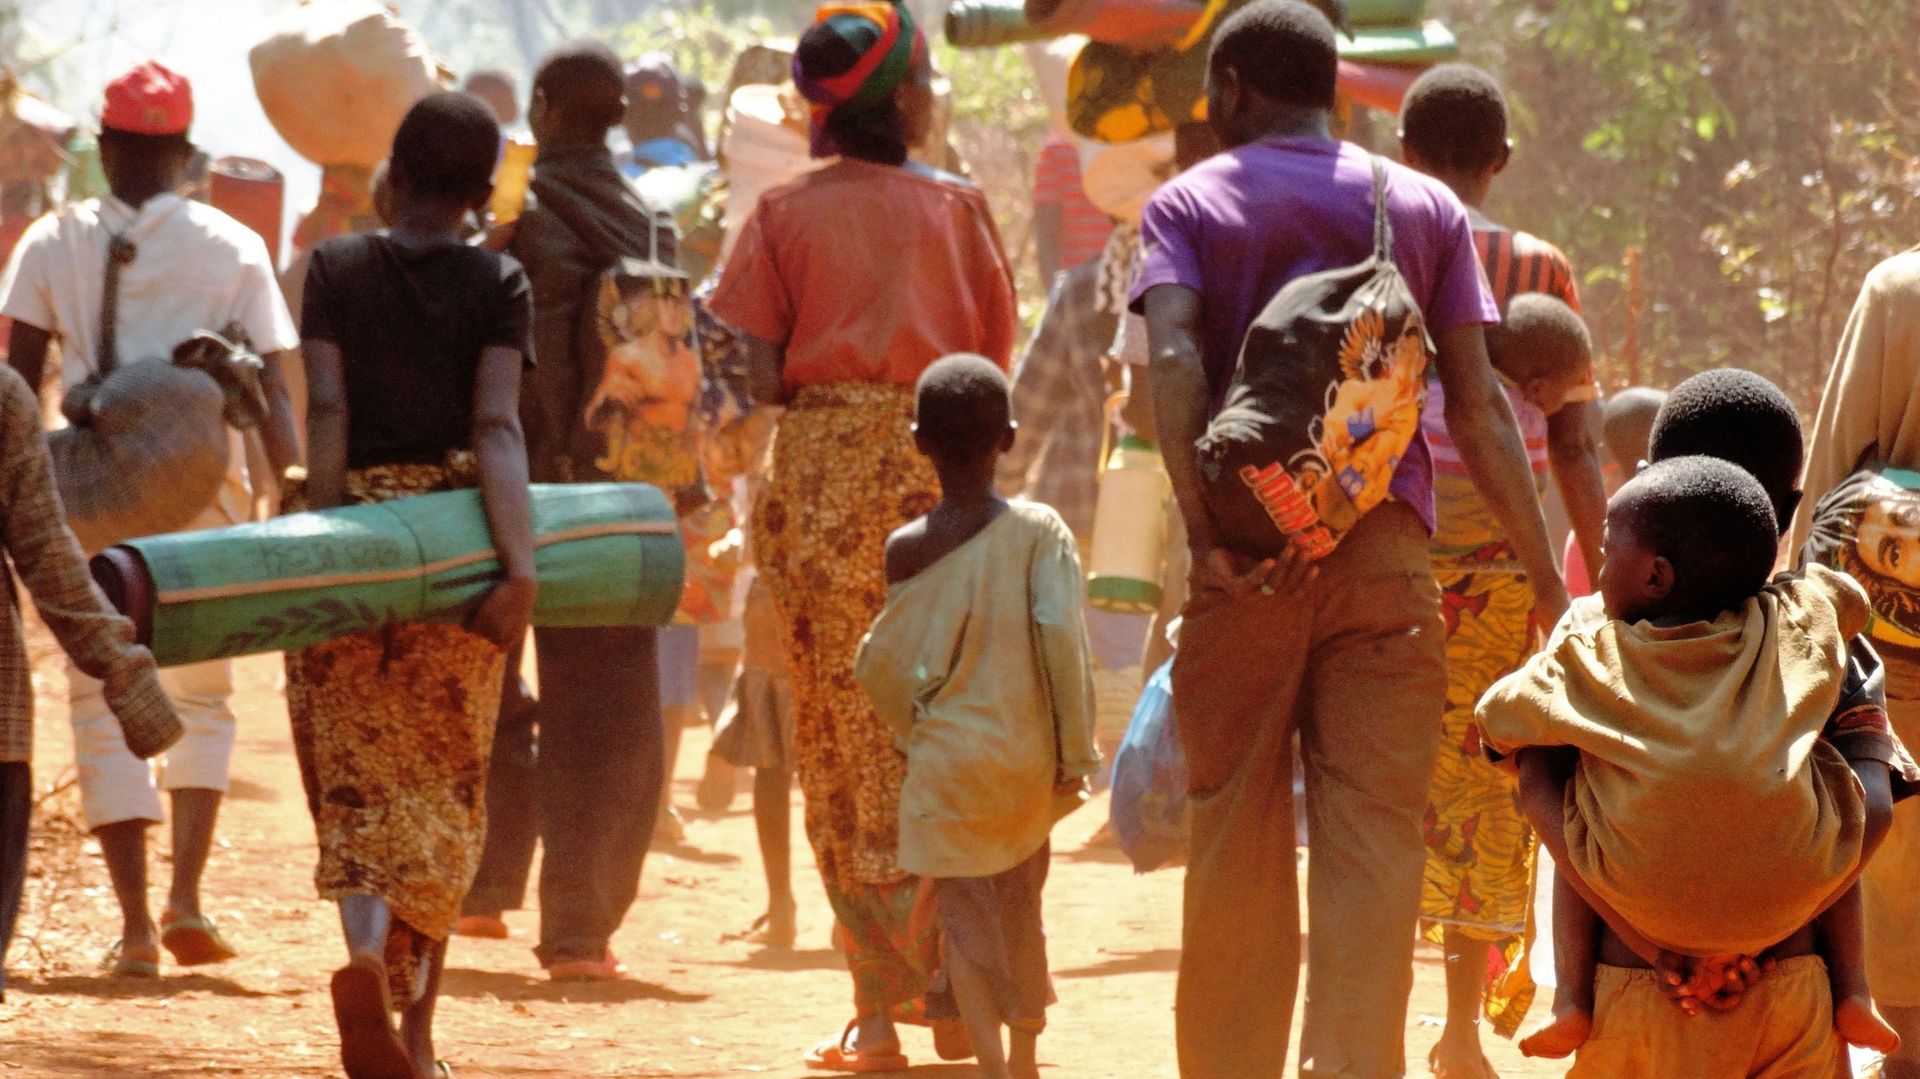 L'ONU s'attend à 50.000 réfugiés burundais supplémentaires en 2018